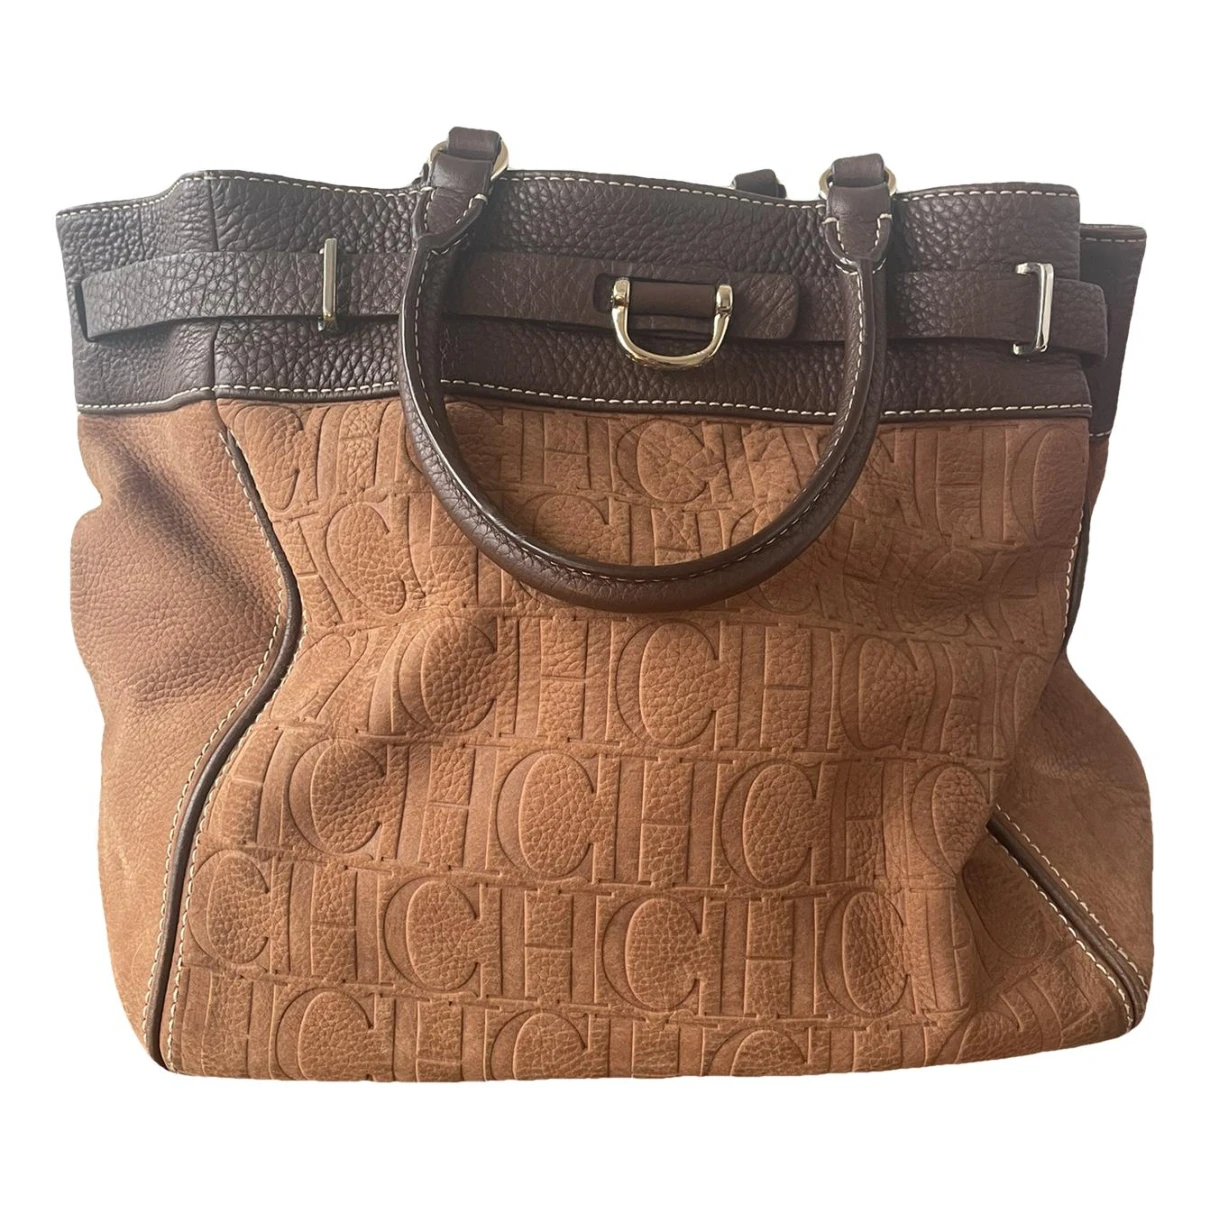 Pre-owned Carolina Herrera Leather Bag In Camel